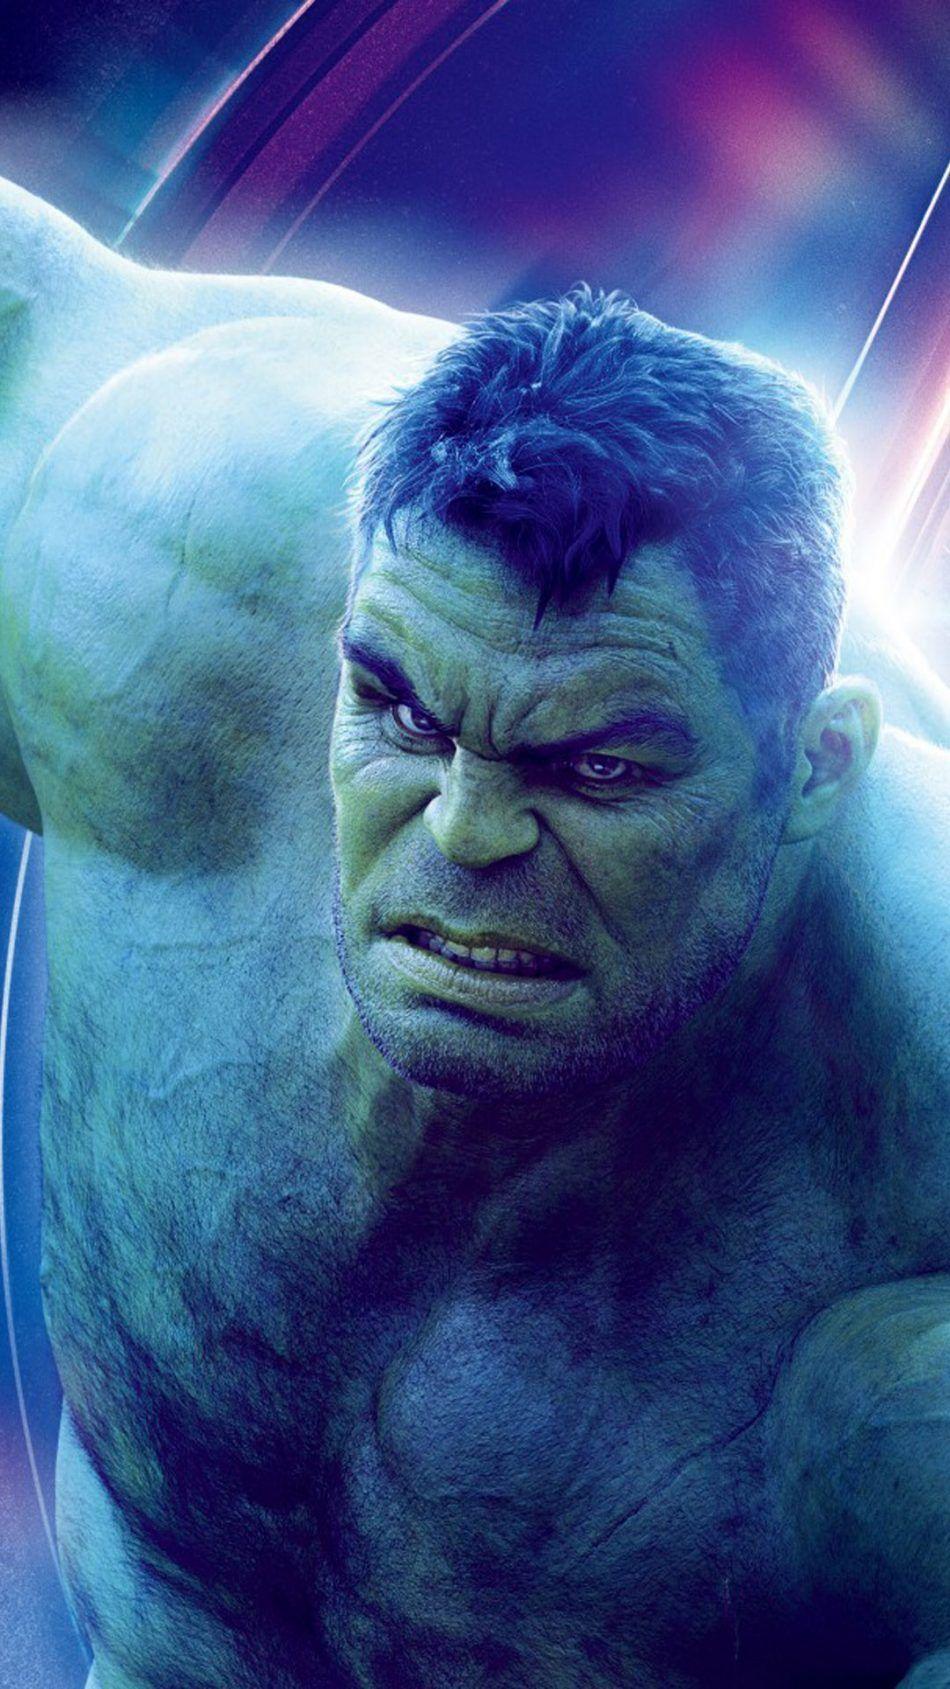 Hulk In Avengers Infinity War. marvel. Hulk avengers, Hulk